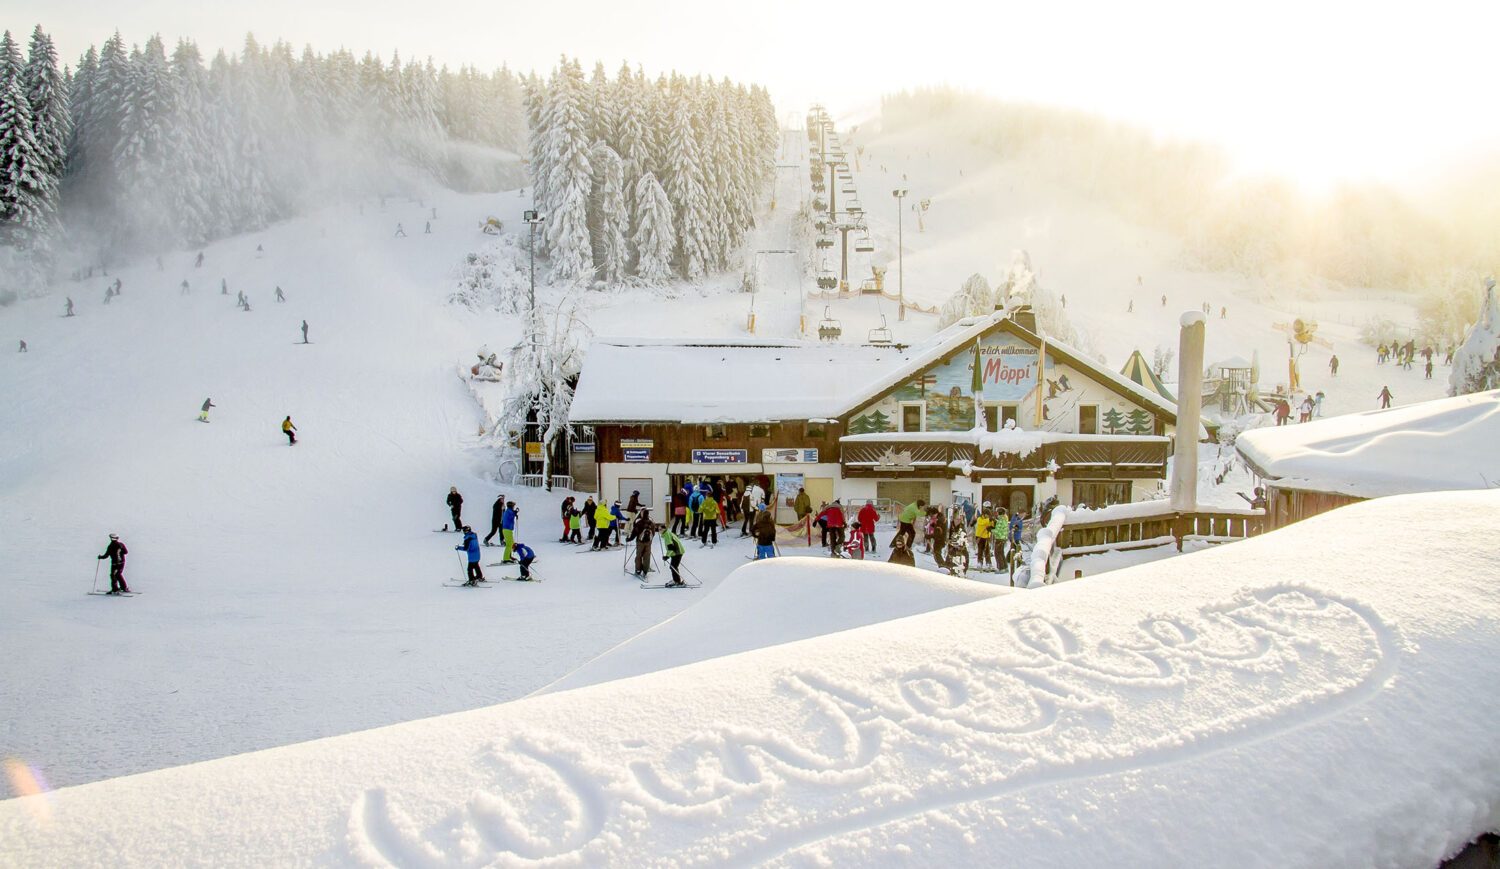 In Hütten wie Möppis Hütte könnt ihr nach einem langen Tag auf der Piste Aprés-Ski feiern